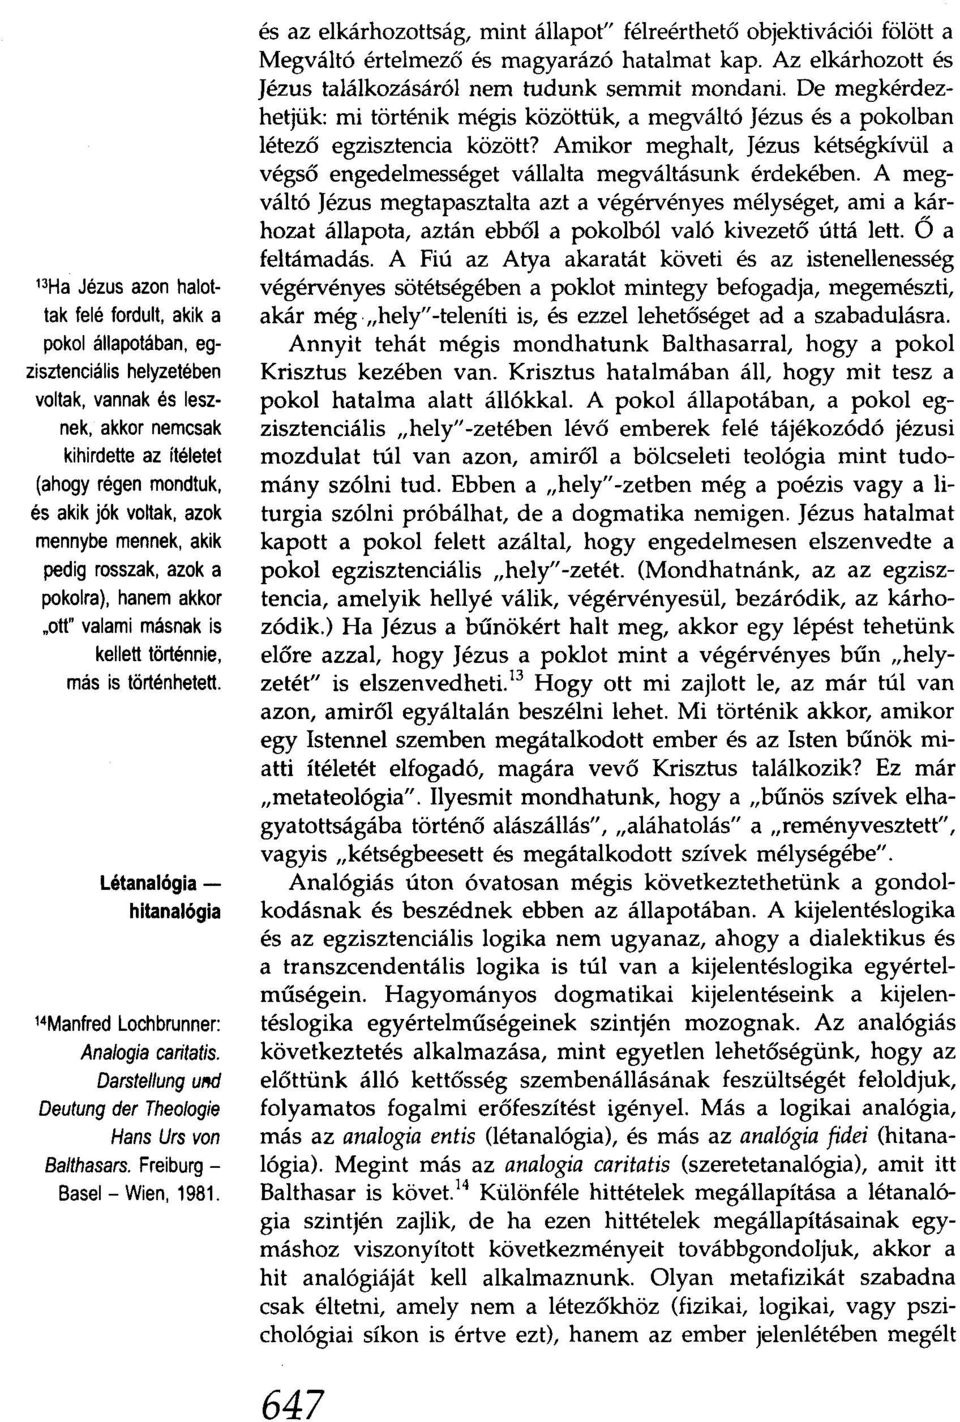 Darstellung UM Deutung der Theologie Hans Urs von Balthasars. Freiburg Basel- Wien, 1981.